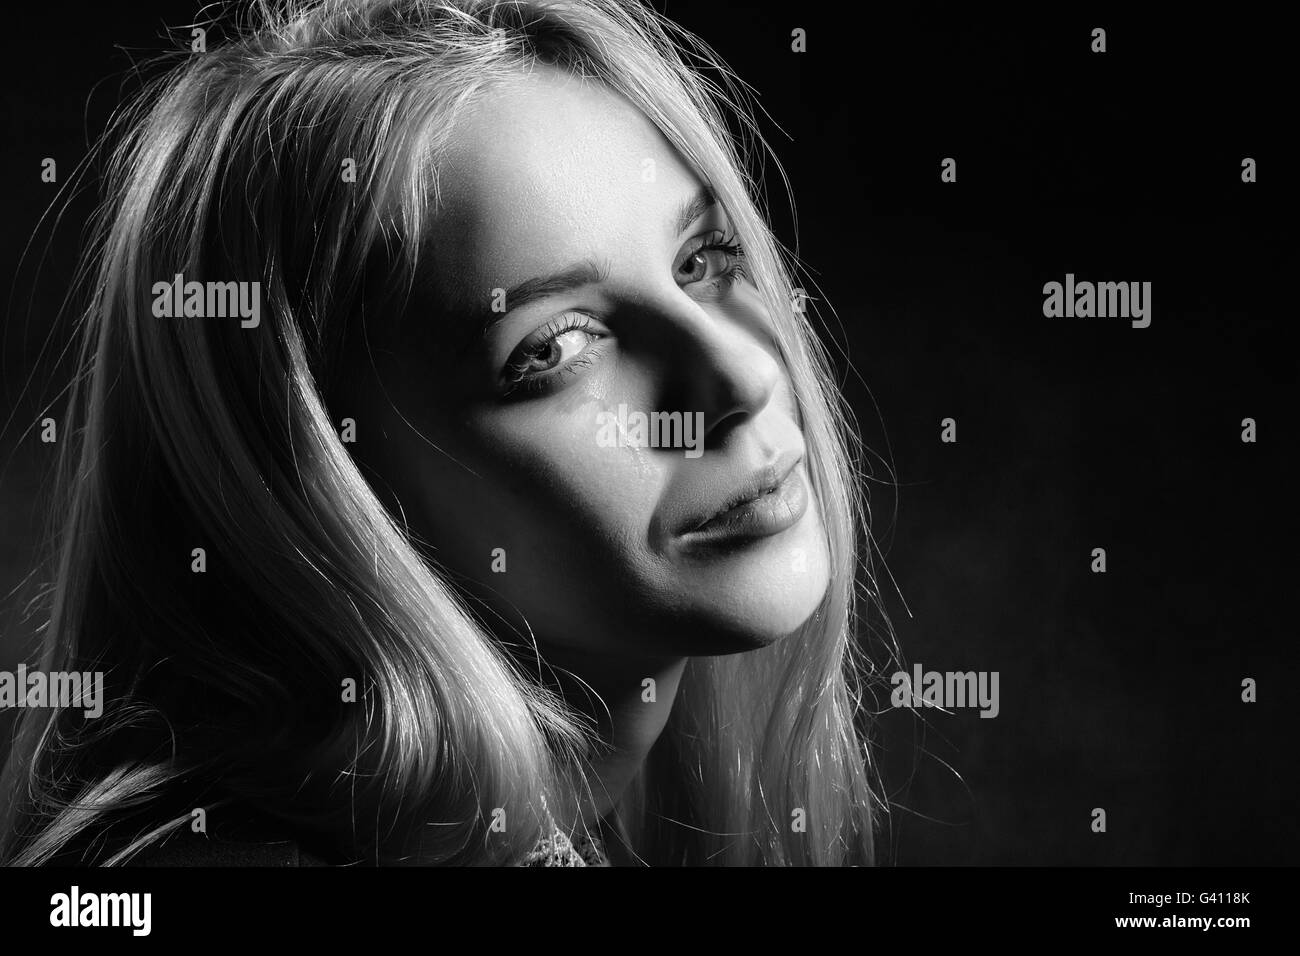 sad girl crying on black background, monochrome Stock Photo